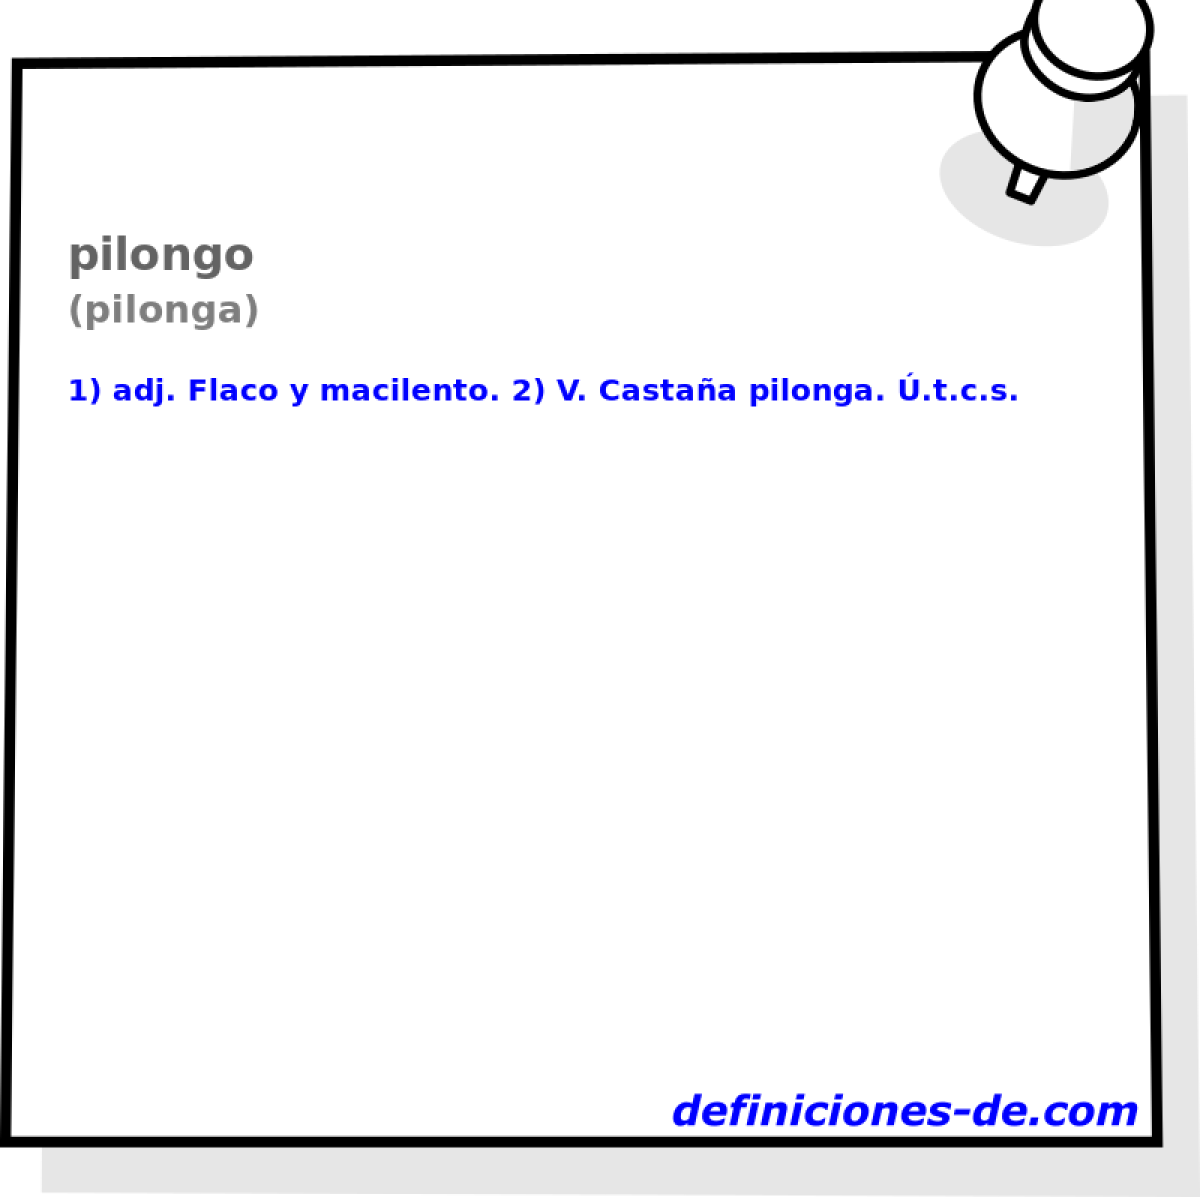 pilongo (pilonga)